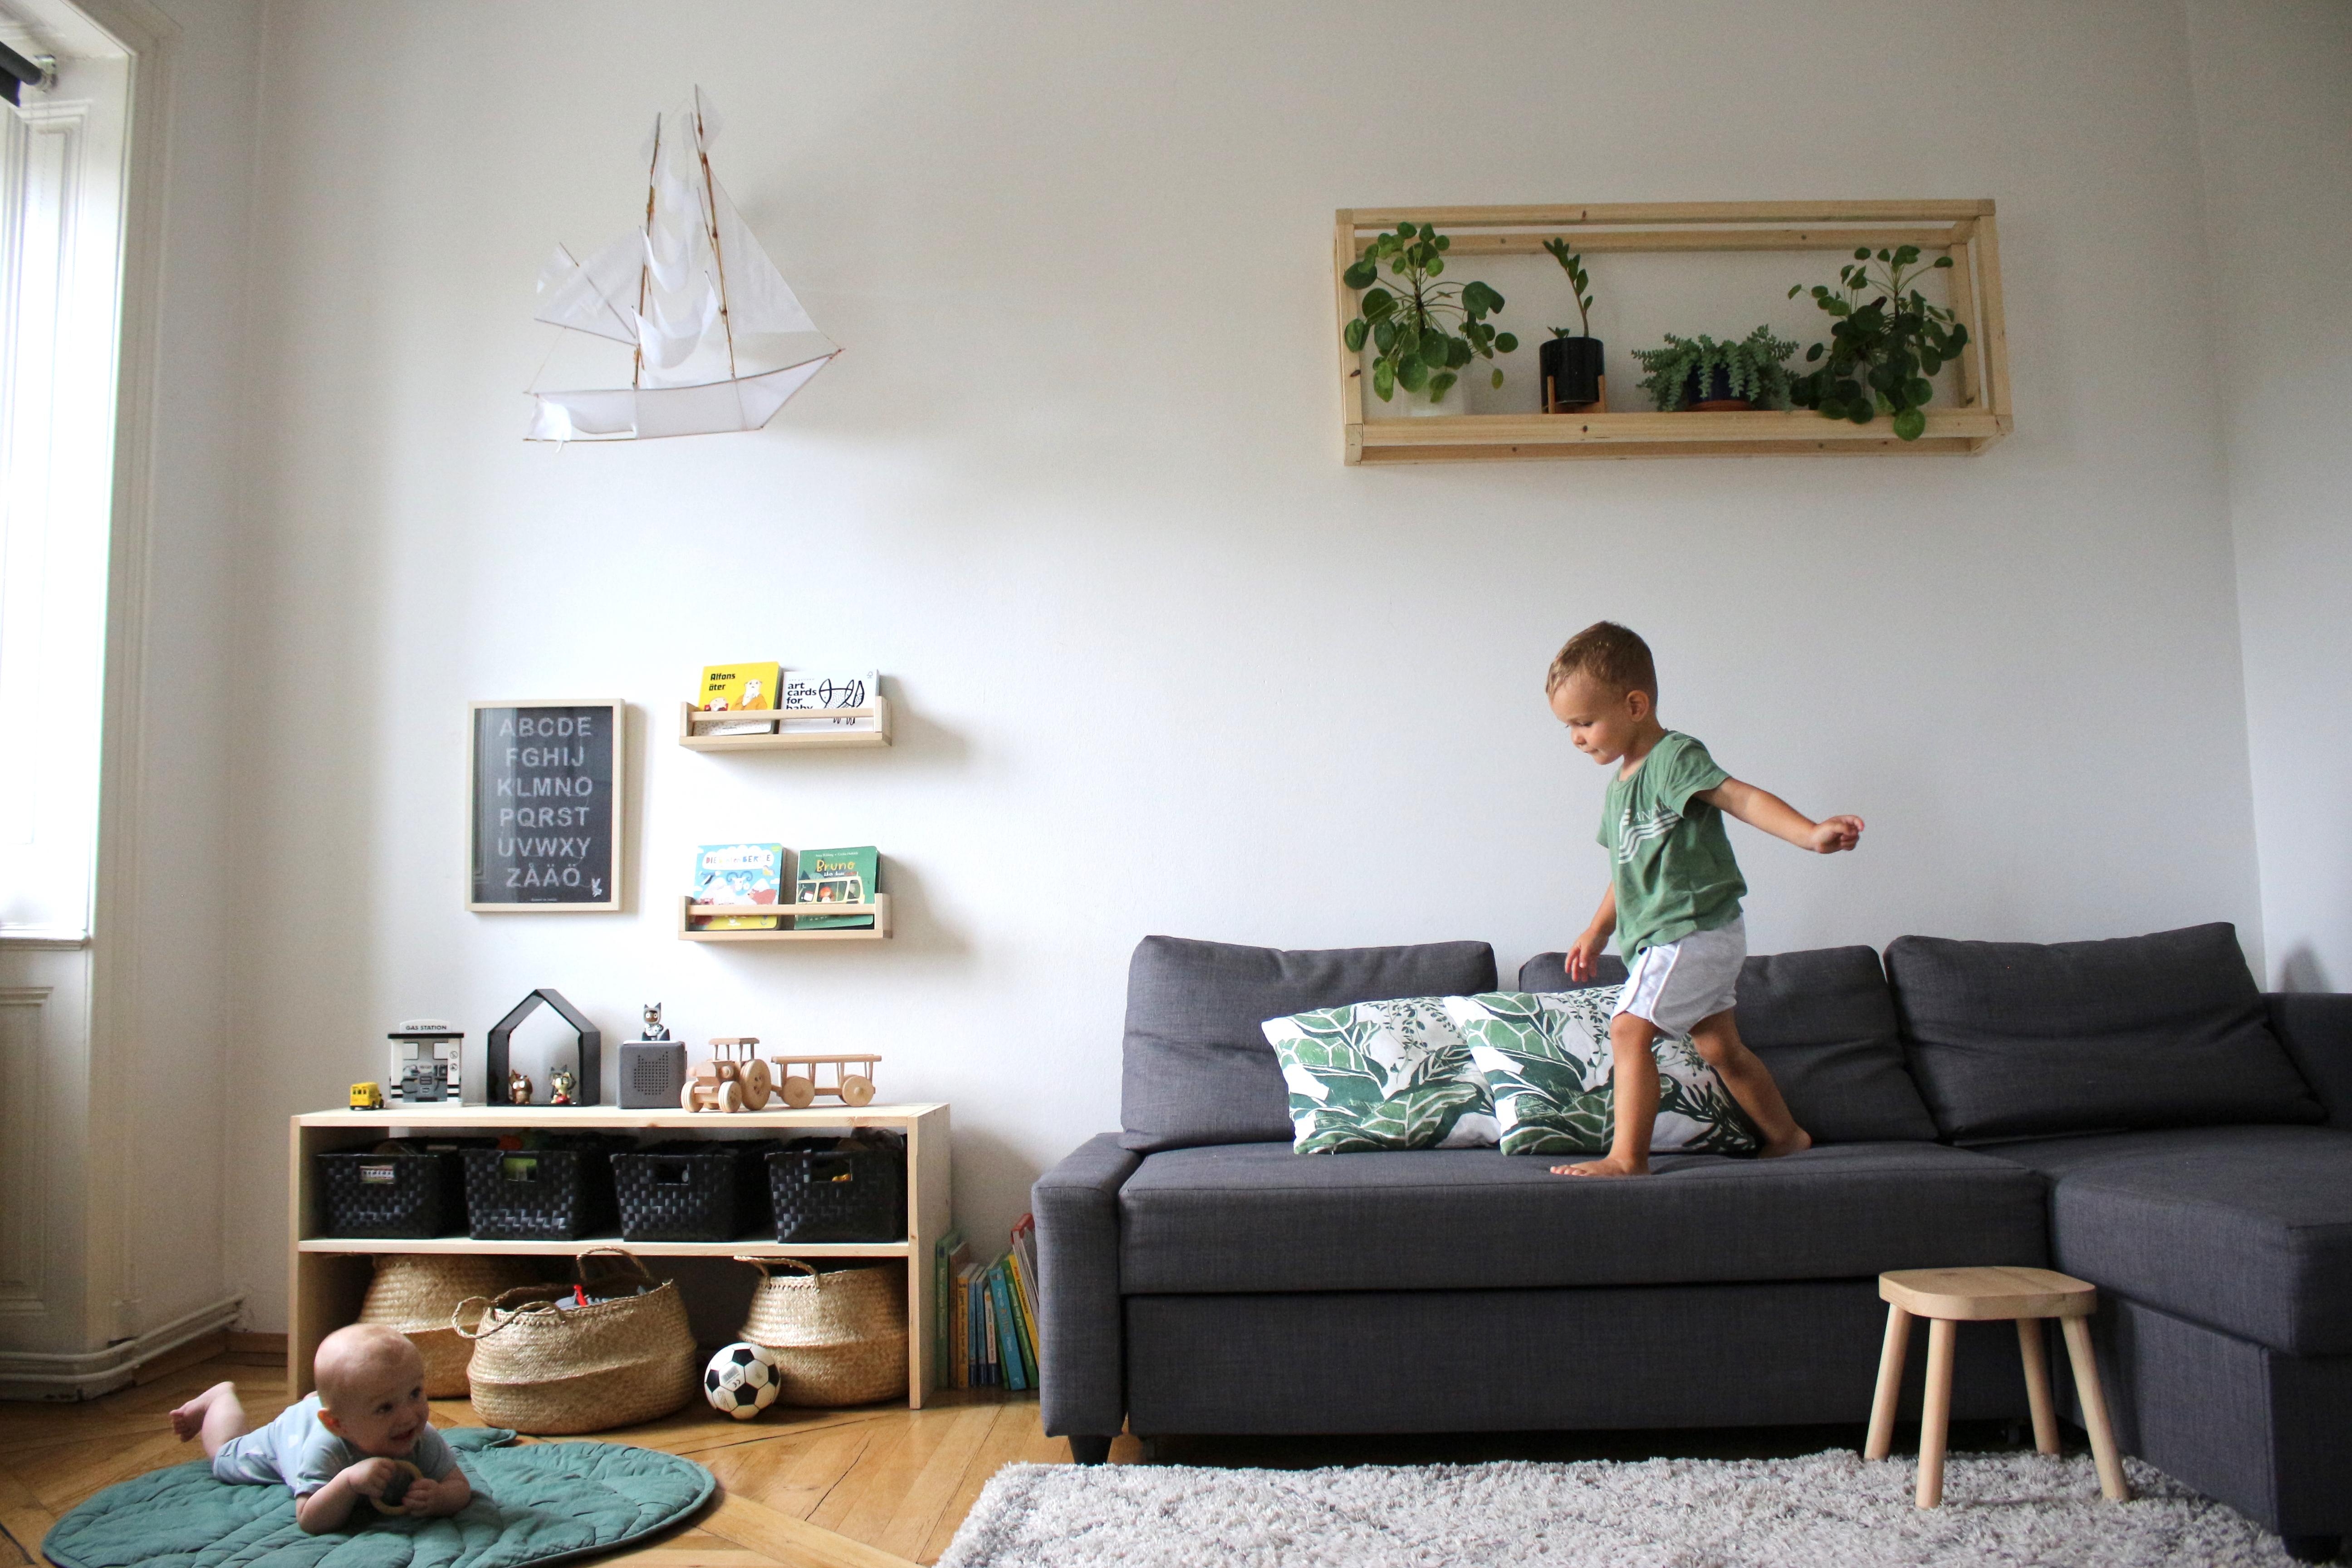 #wohnzimmergestaltung #livingchallenge 
Gemütliches Wohnzimmer mit DIY Blumenregal und Kinderecke